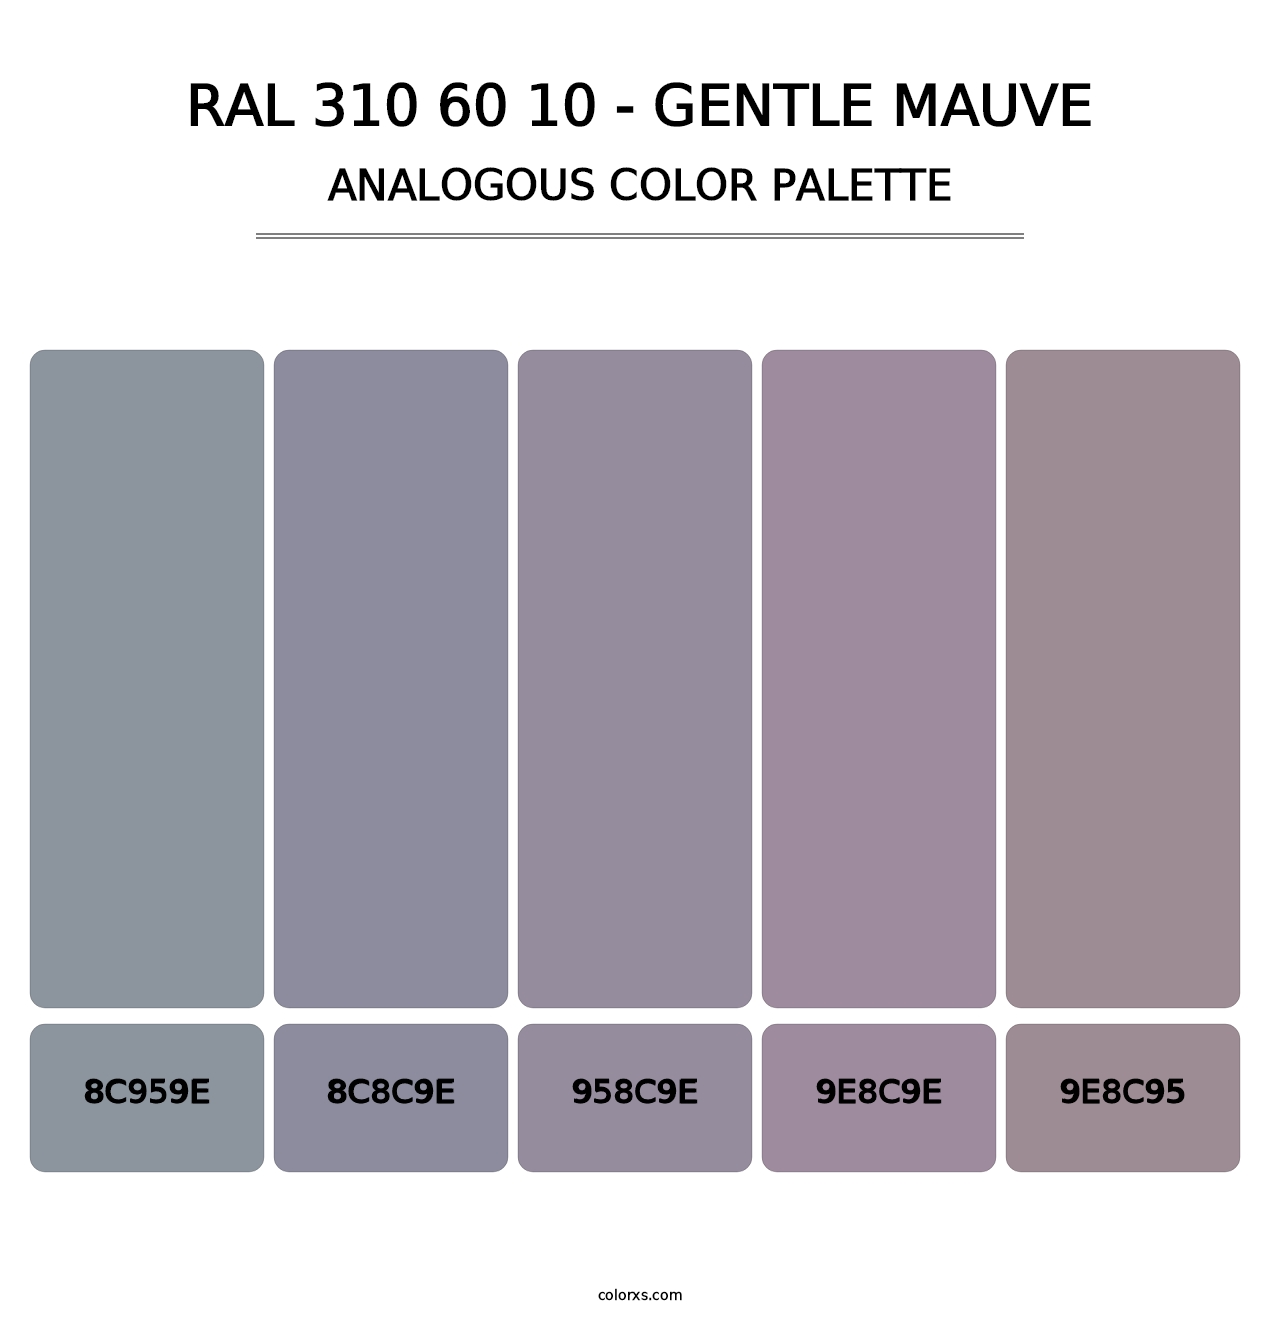 RAL 310 60 10 - Gentle Mauve - Analogous Color Palette